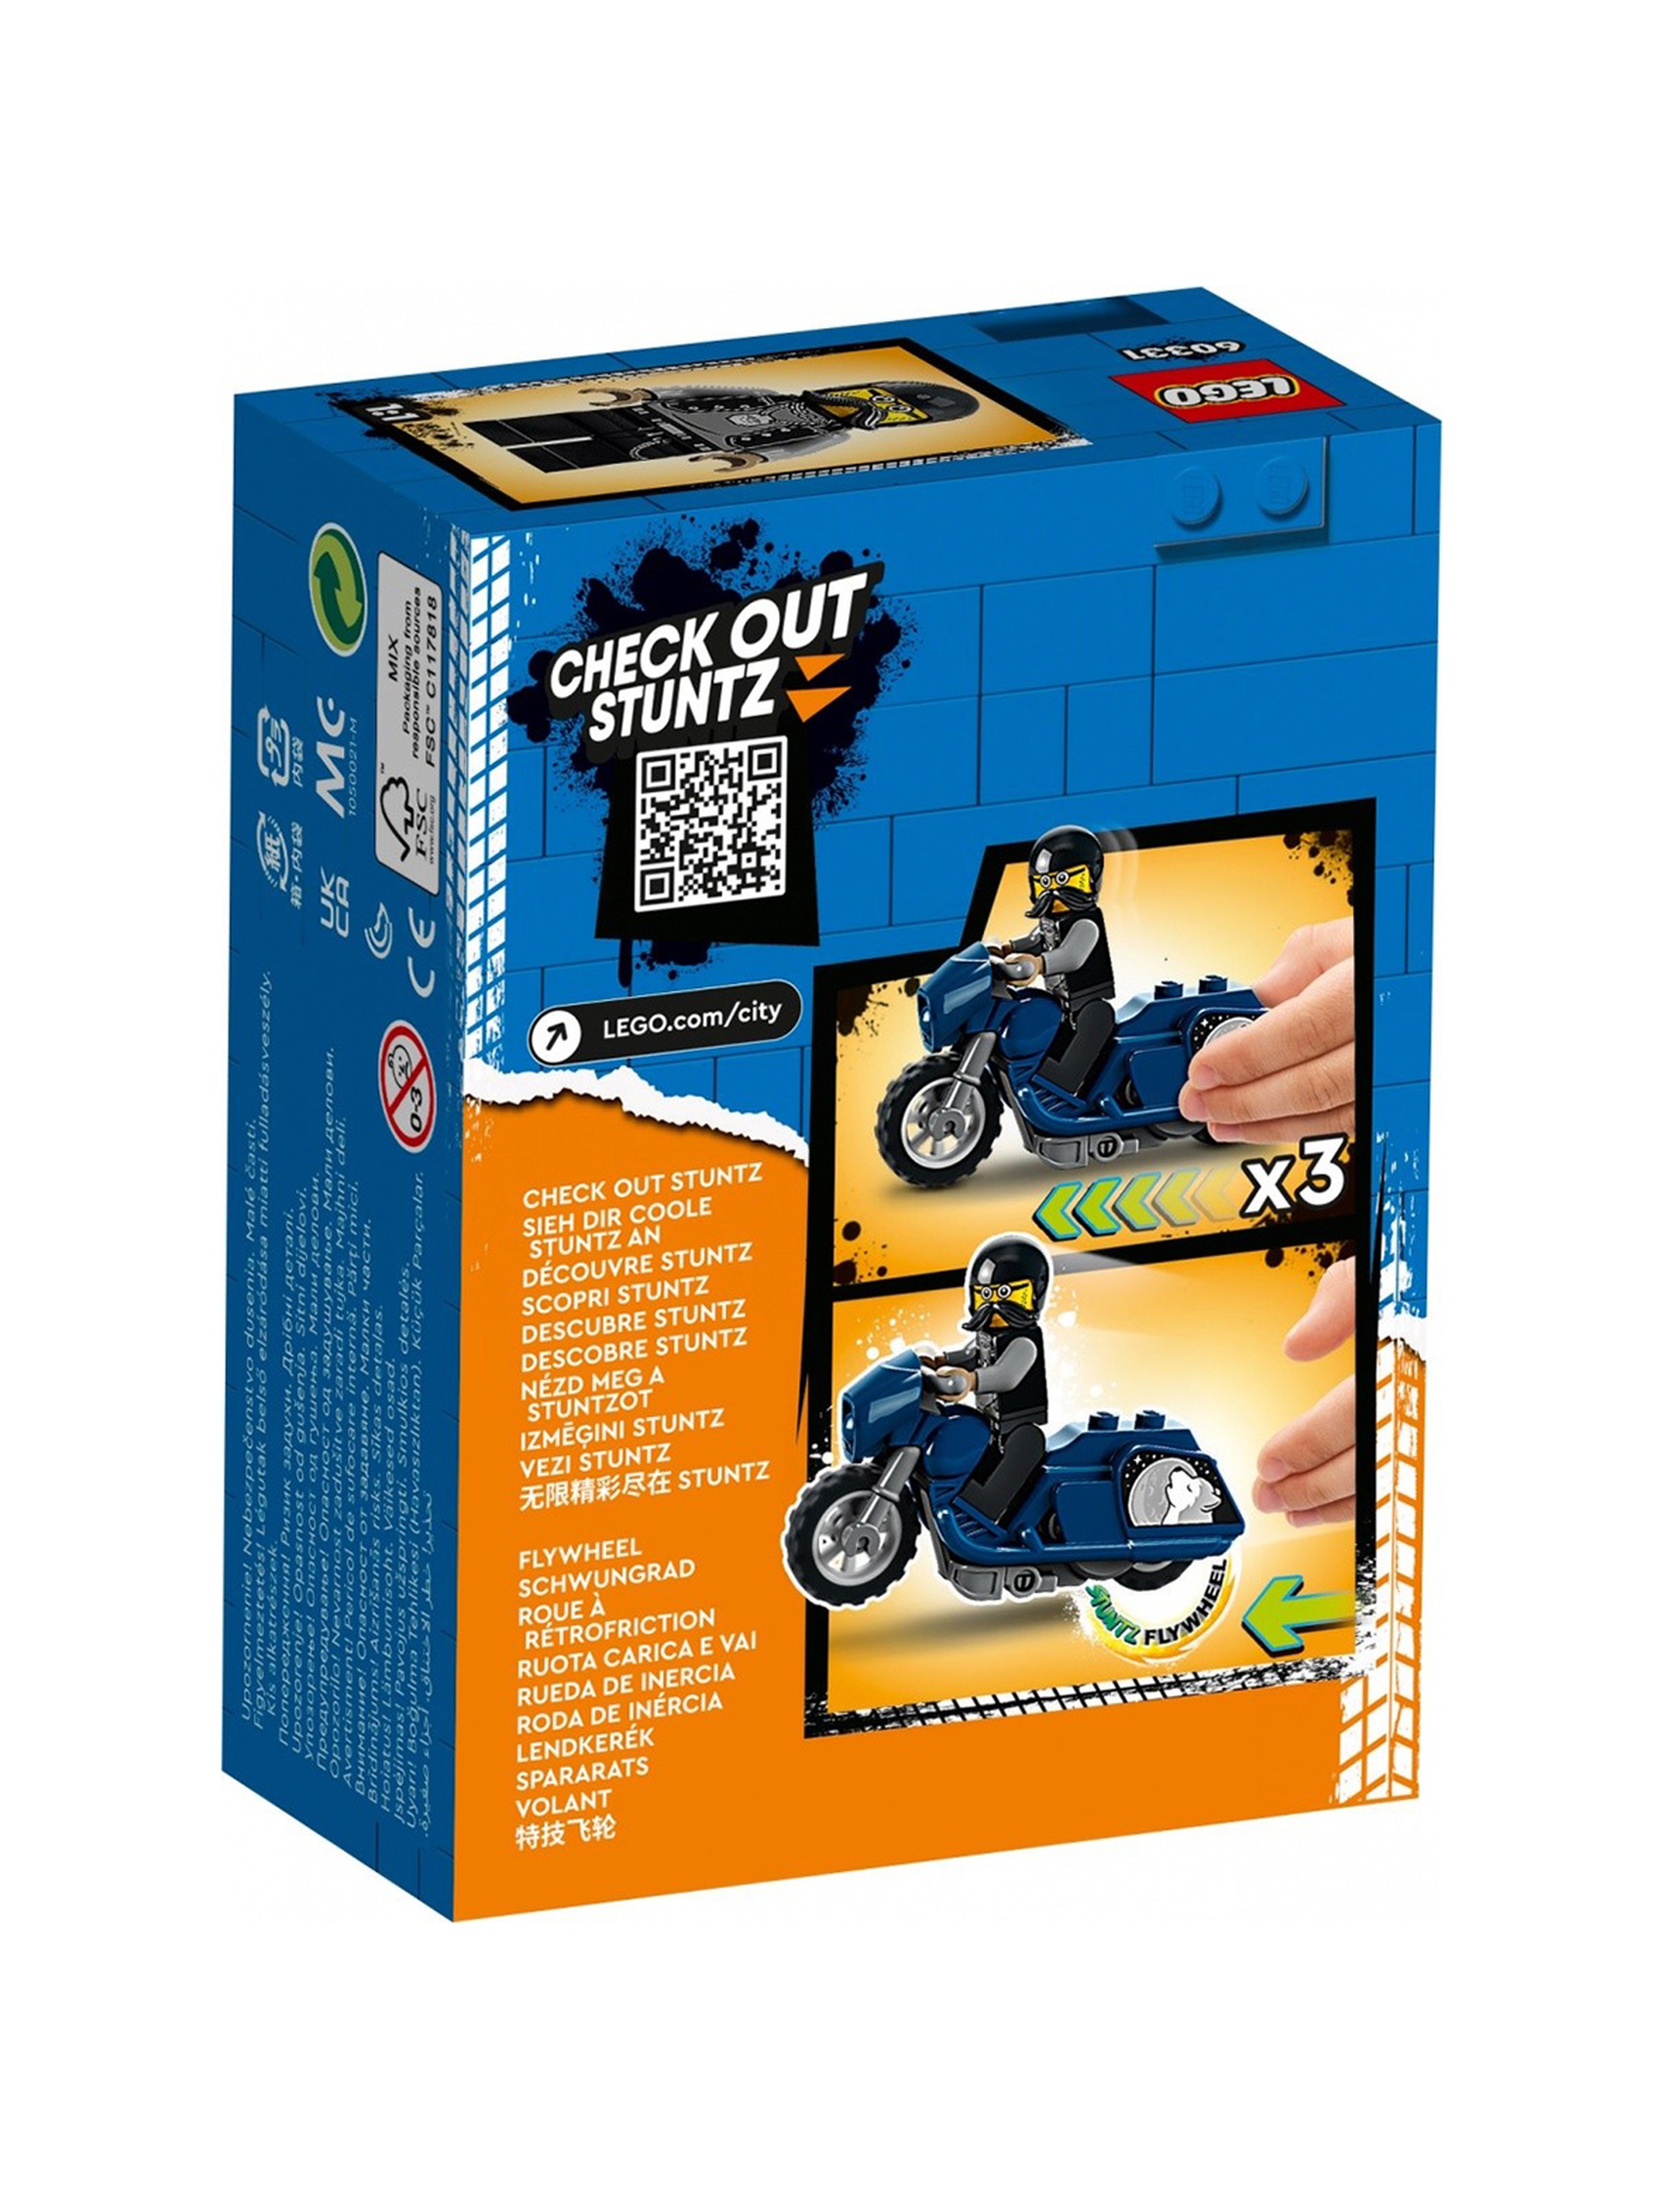 LEGO City - Turystyczny motocykl kaskaderski 60331 - 10 elementów, wiek 5+